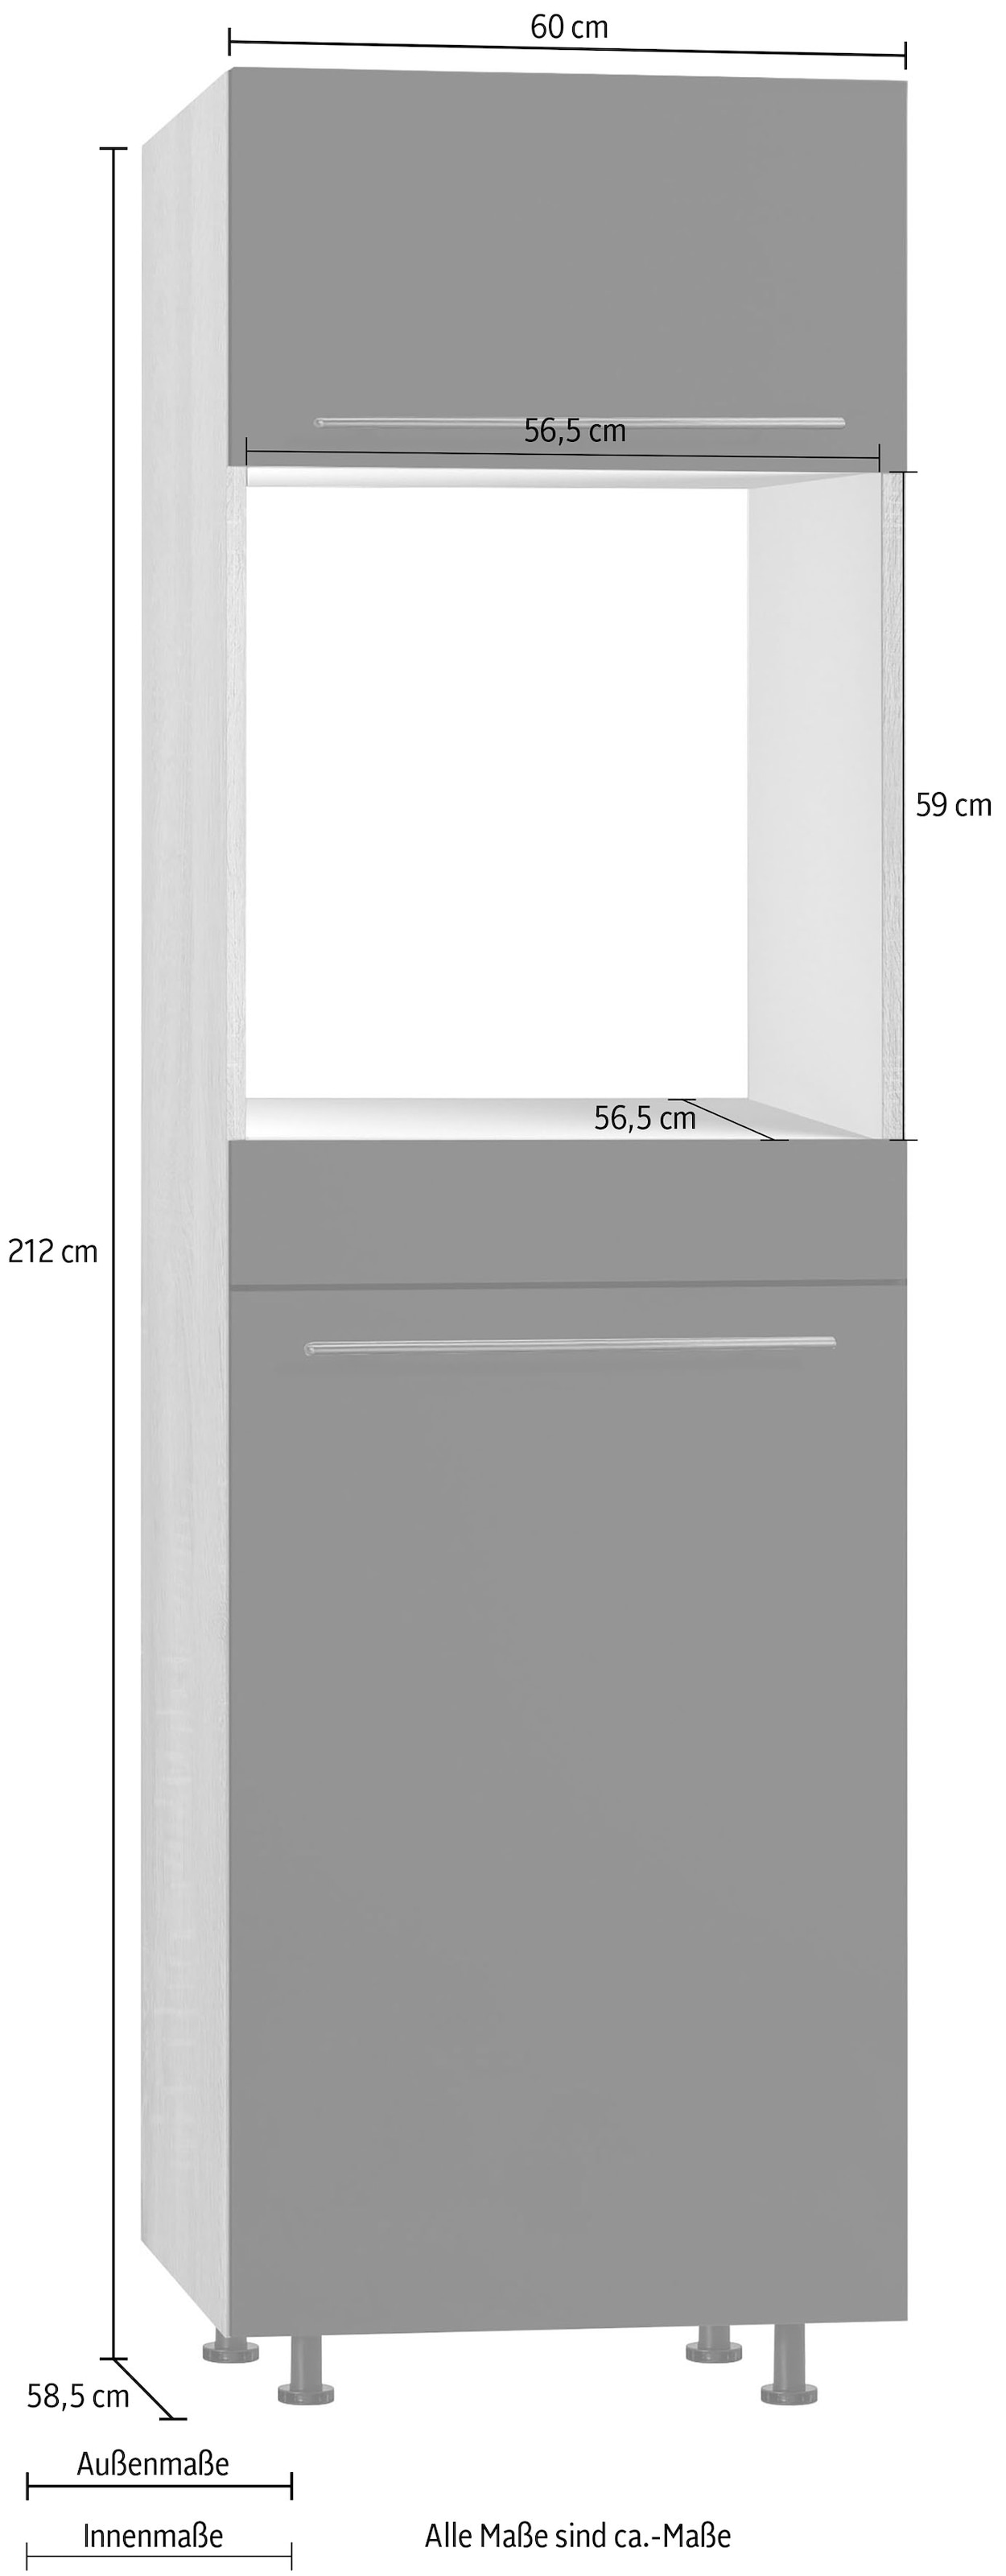 OPTIFIT Backofen/Kühlumbauschrank »Bern«, 60 cm breit, 212 cm hoch, mit höhenverstellbaren Stellfüßen